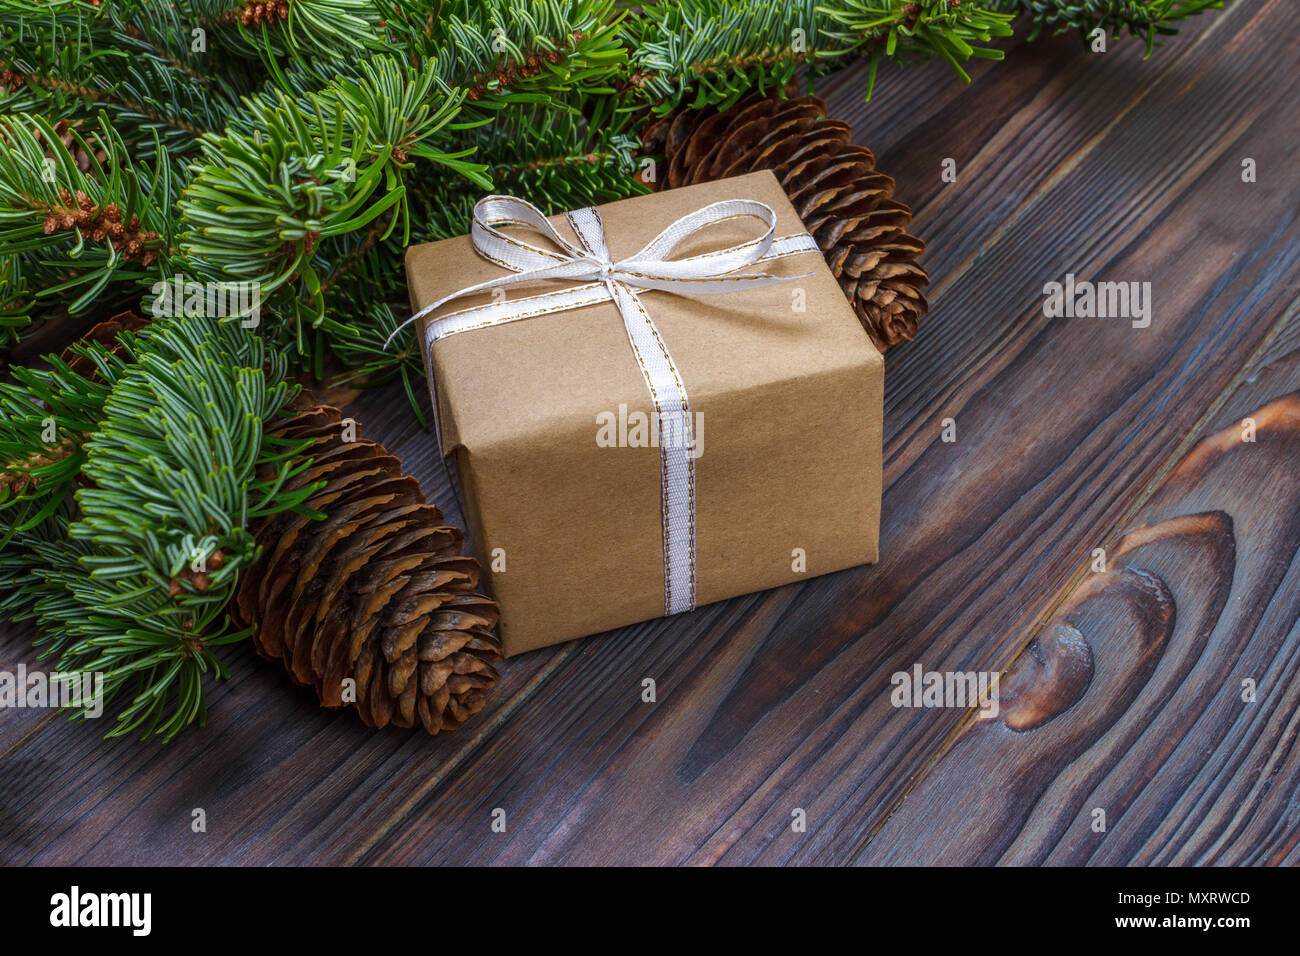 Weihnachten Komposition. Weihnachten Geschenk, gestrickte Decke, Tannenzapfen, tannenzweigen auf hölzernen weißen Hintergrund. Flach, Ansicht von oben. Stockfoto